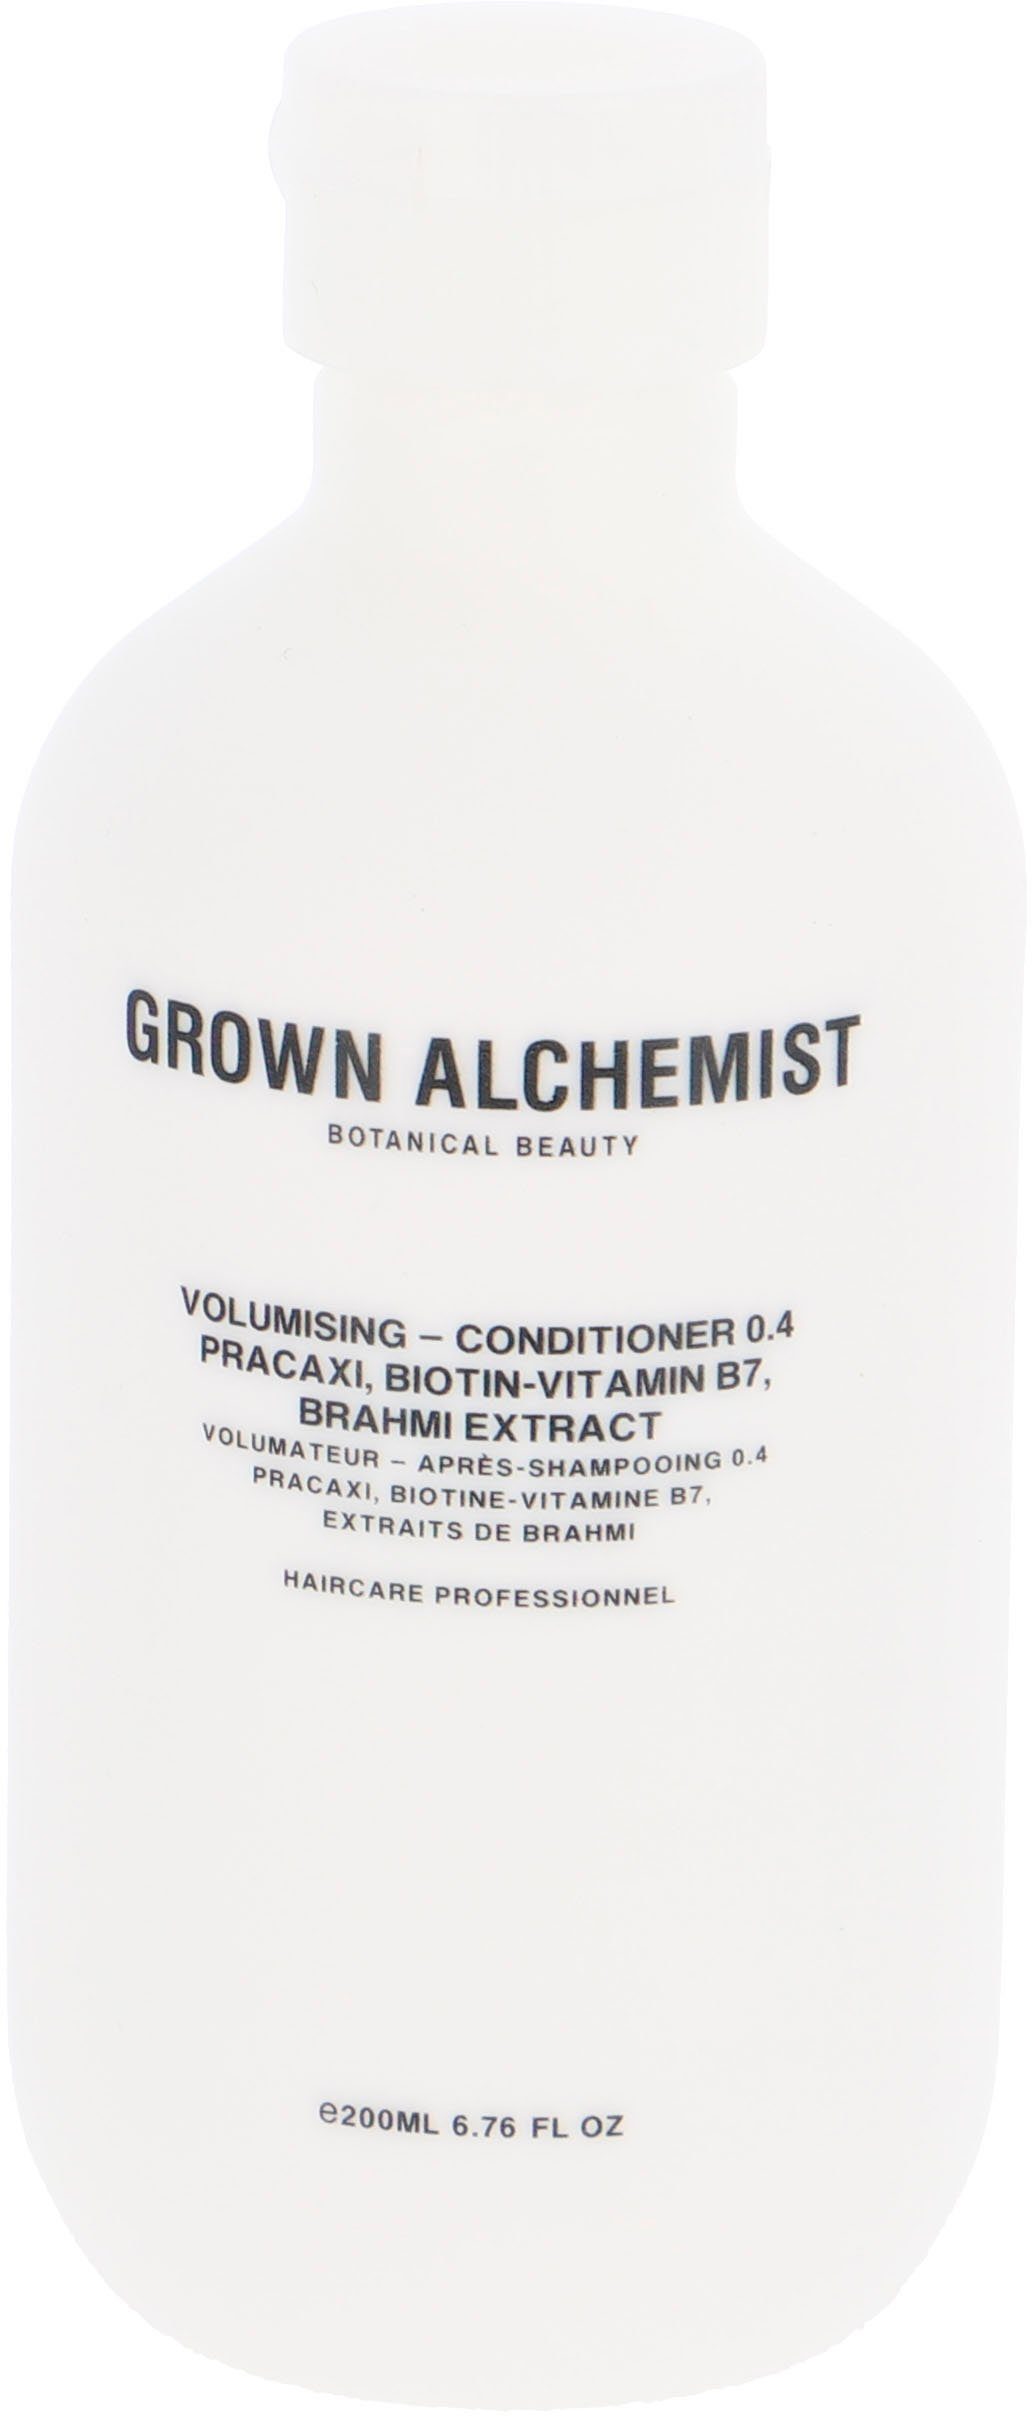 - Extract Brahmi Volumising ALCHEMIST 0.4, Haarspülung Pracaxi, Conditioner Biotin-Vitamin B7, GROWN